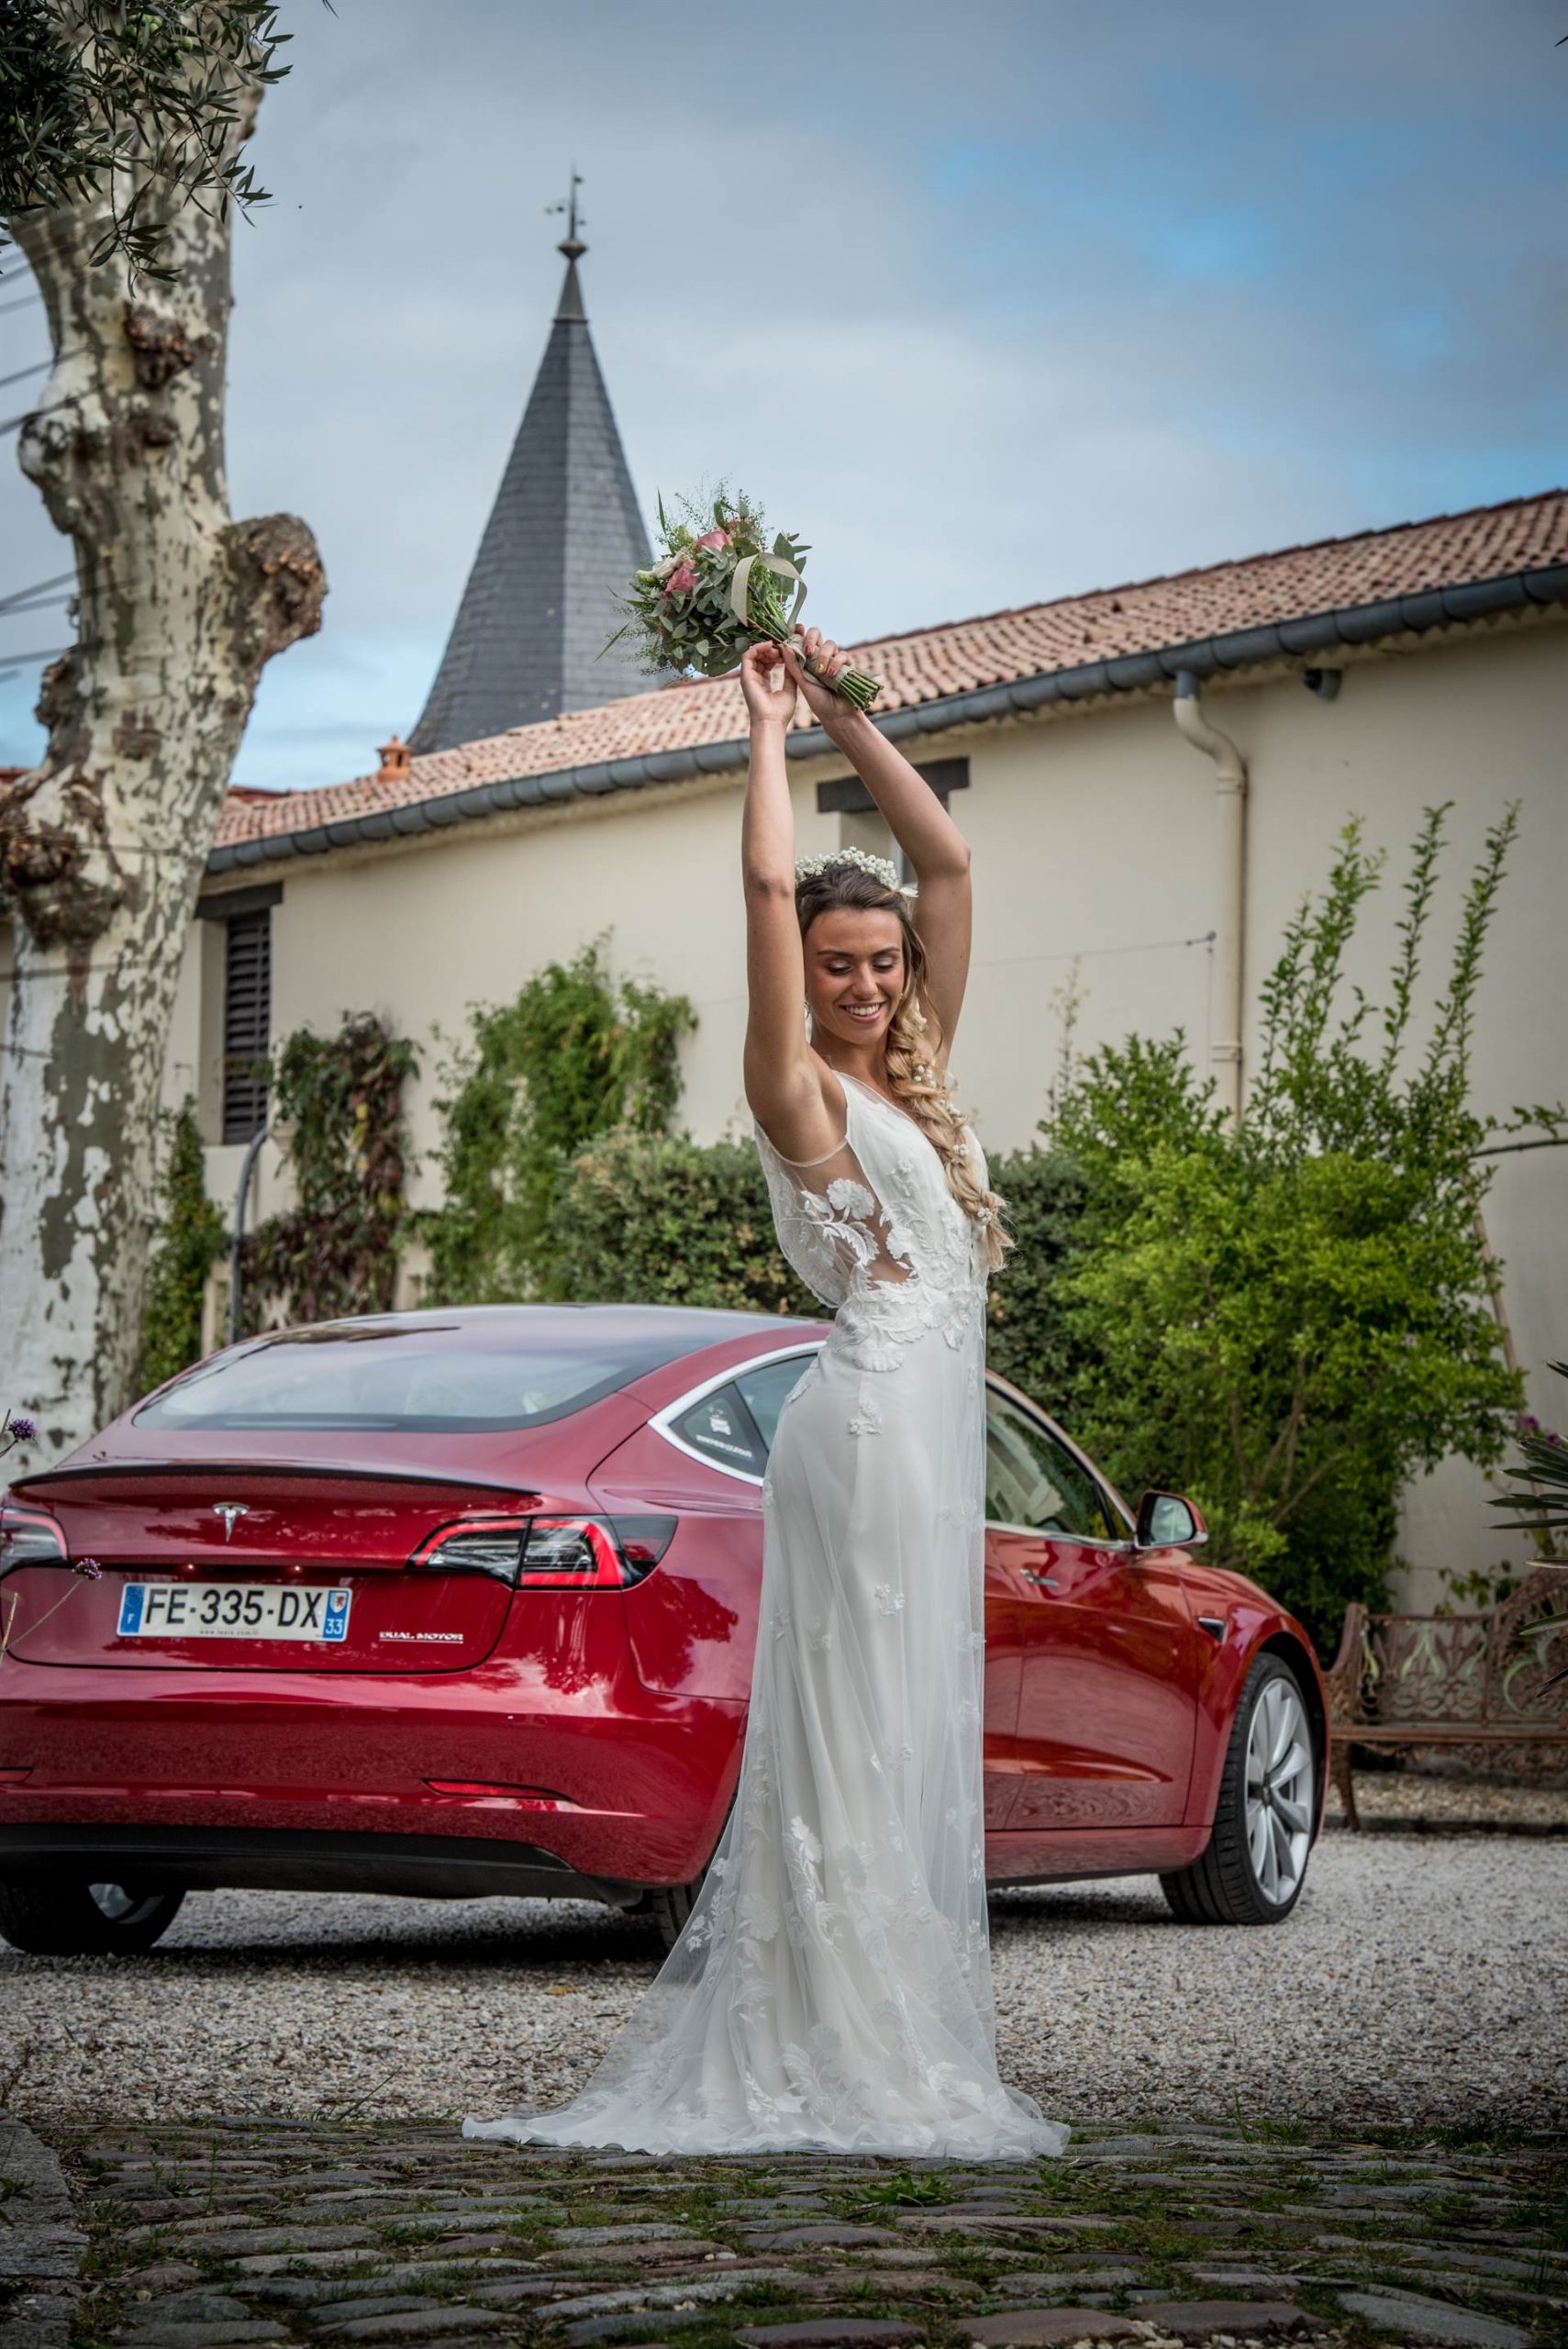 Une mariée devant une Tesla 3 rouge